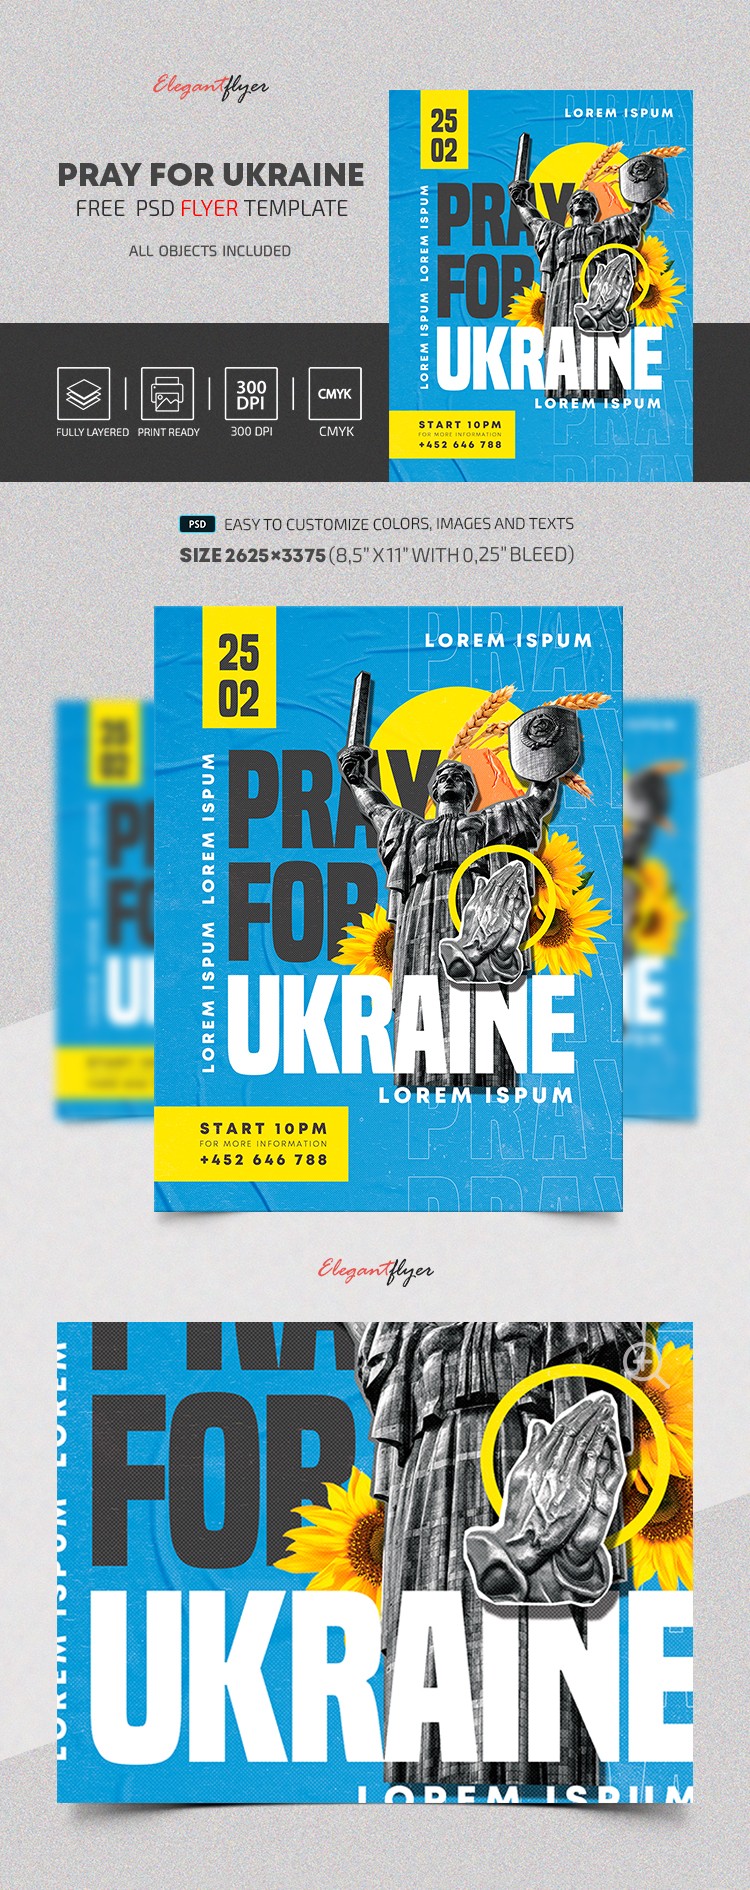 Oração pelo folheto da Ucrânia by ElegantFlyer